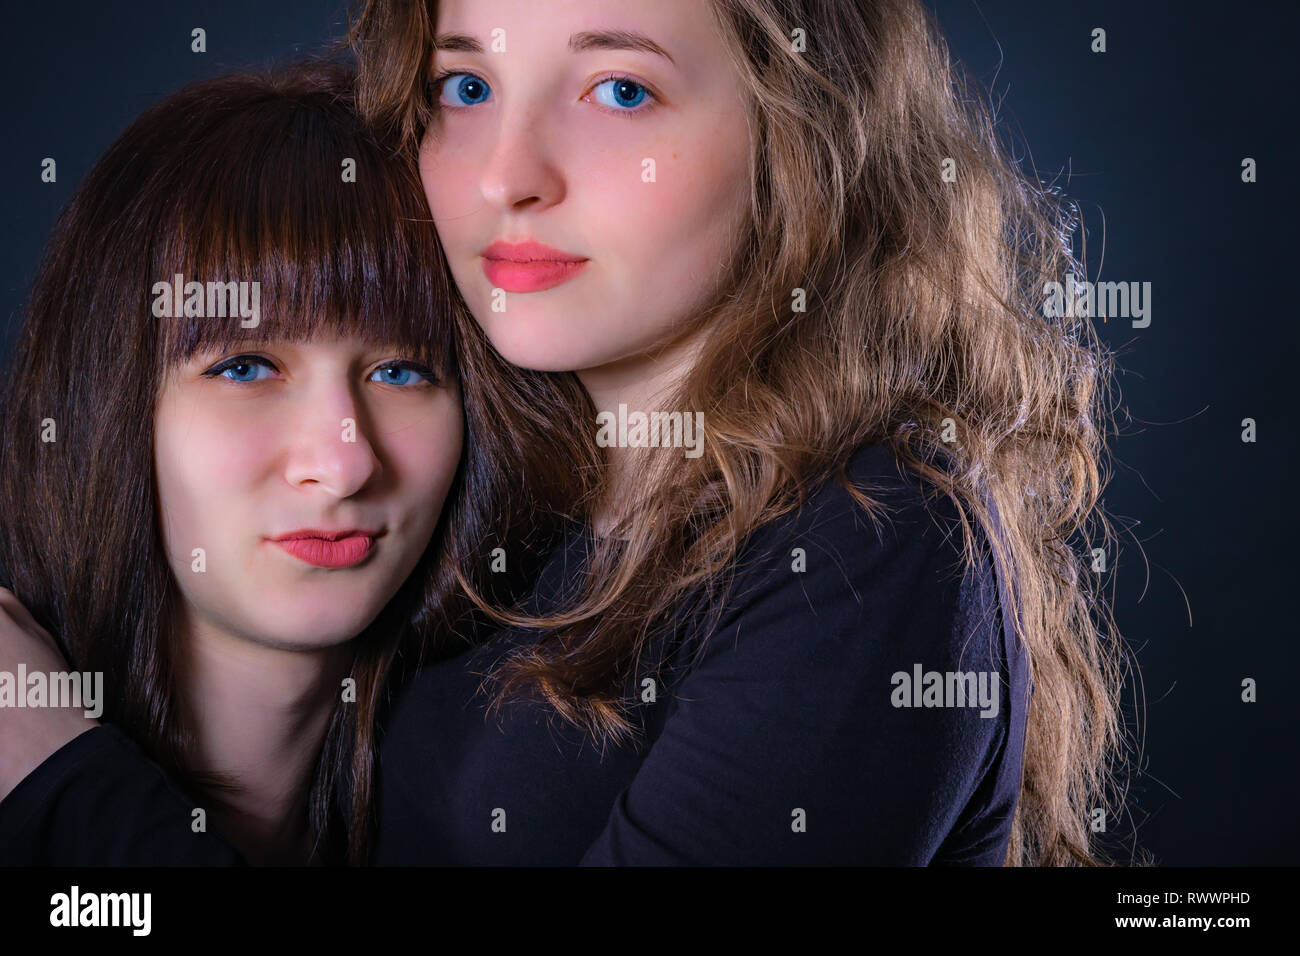 Gruppe Porträt von zwei Mädchen auf einem dunklen Hintergrund Stockfoto